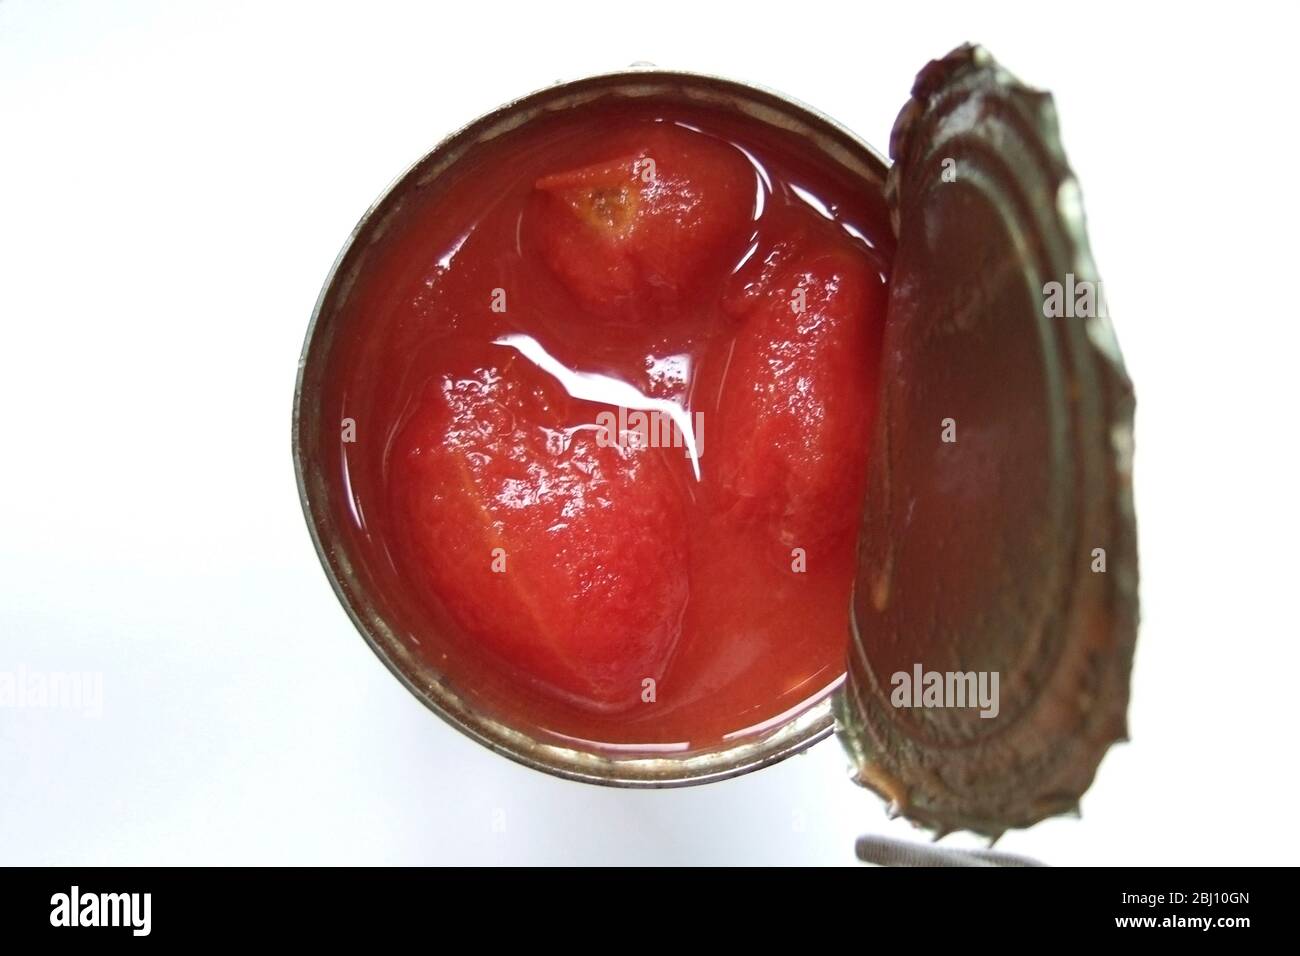 Lata abierta de tomates ciruelos vistos desde arriba - Foto de stock